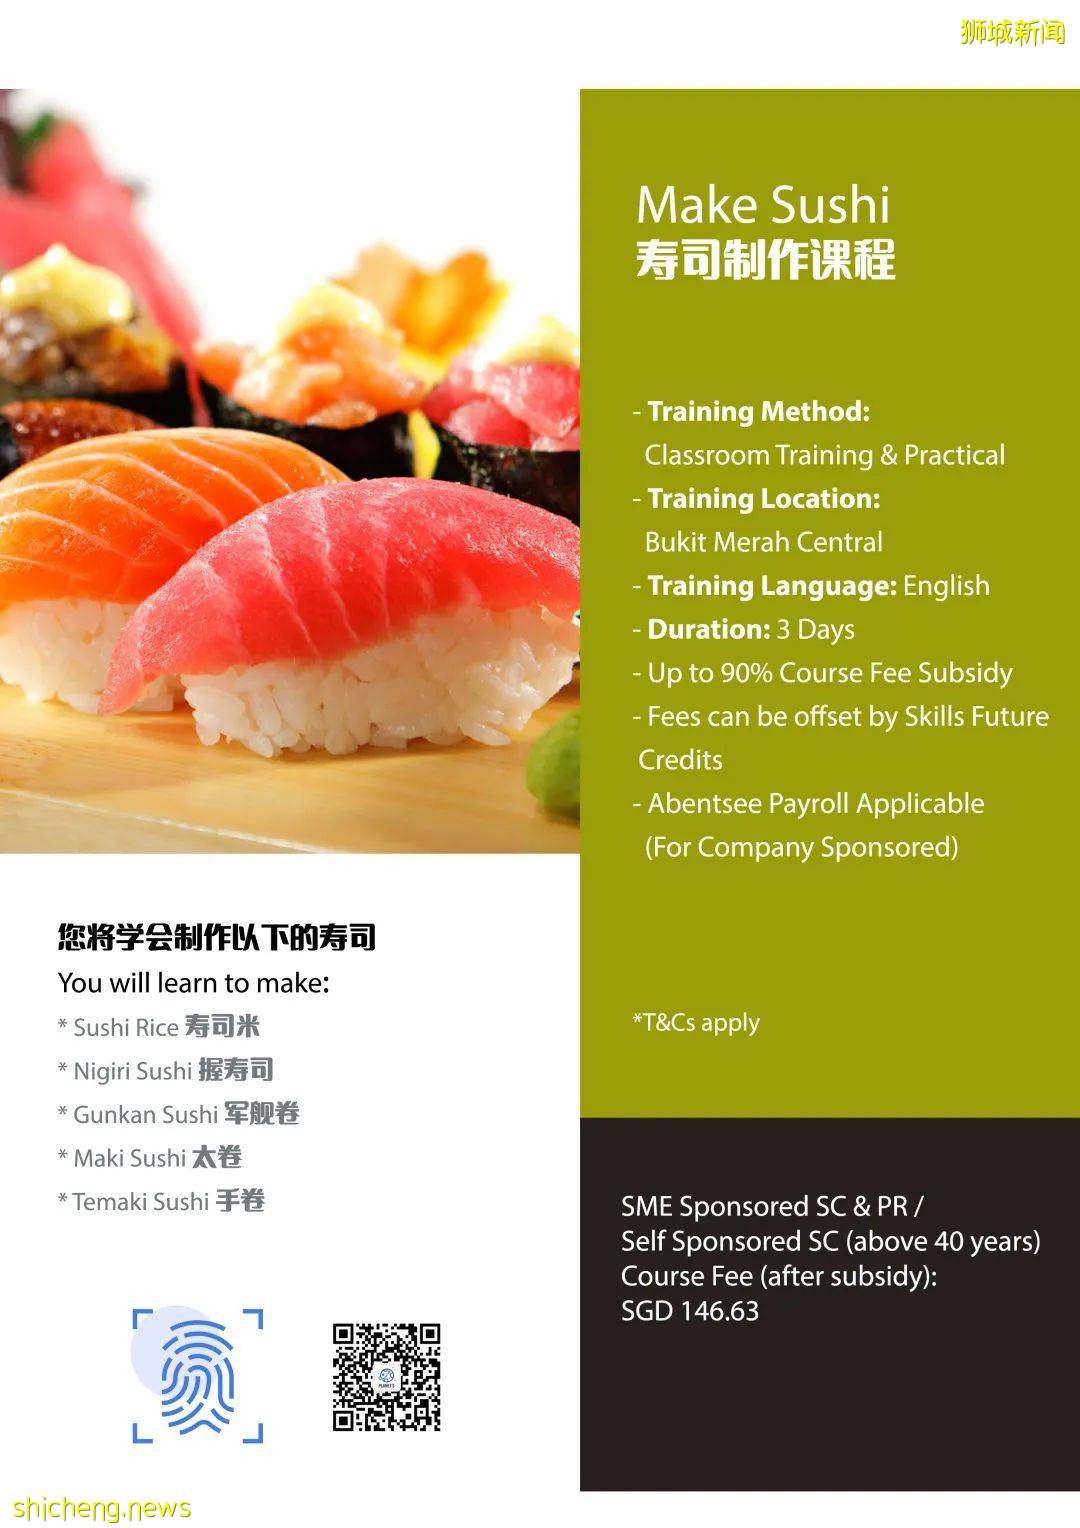 【政府津貼課程】中文授課糕點、面包課程，英文授課壽司制作課程